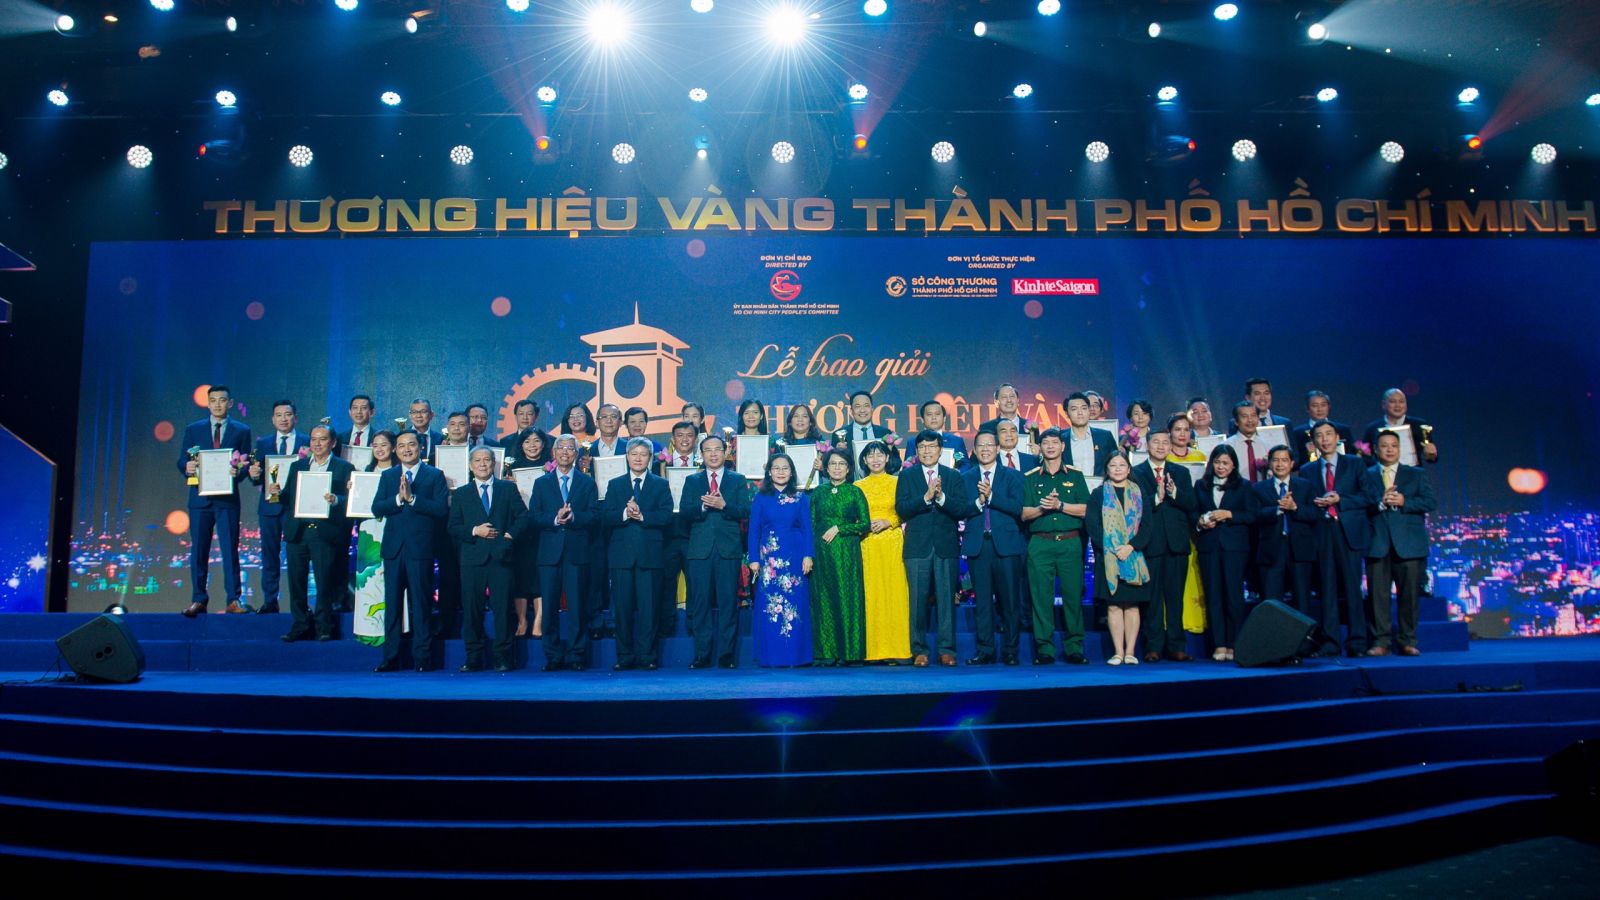 Ông Phan Văn Mãi - Chủ tịch UBND TP.HCM hy vọng những thương hiệu được tôn vinh sẽ ngày càng phát triển và tỏa sáng hơn nữa, góp phần thúc đẩy kinh tế thành phố bền vững